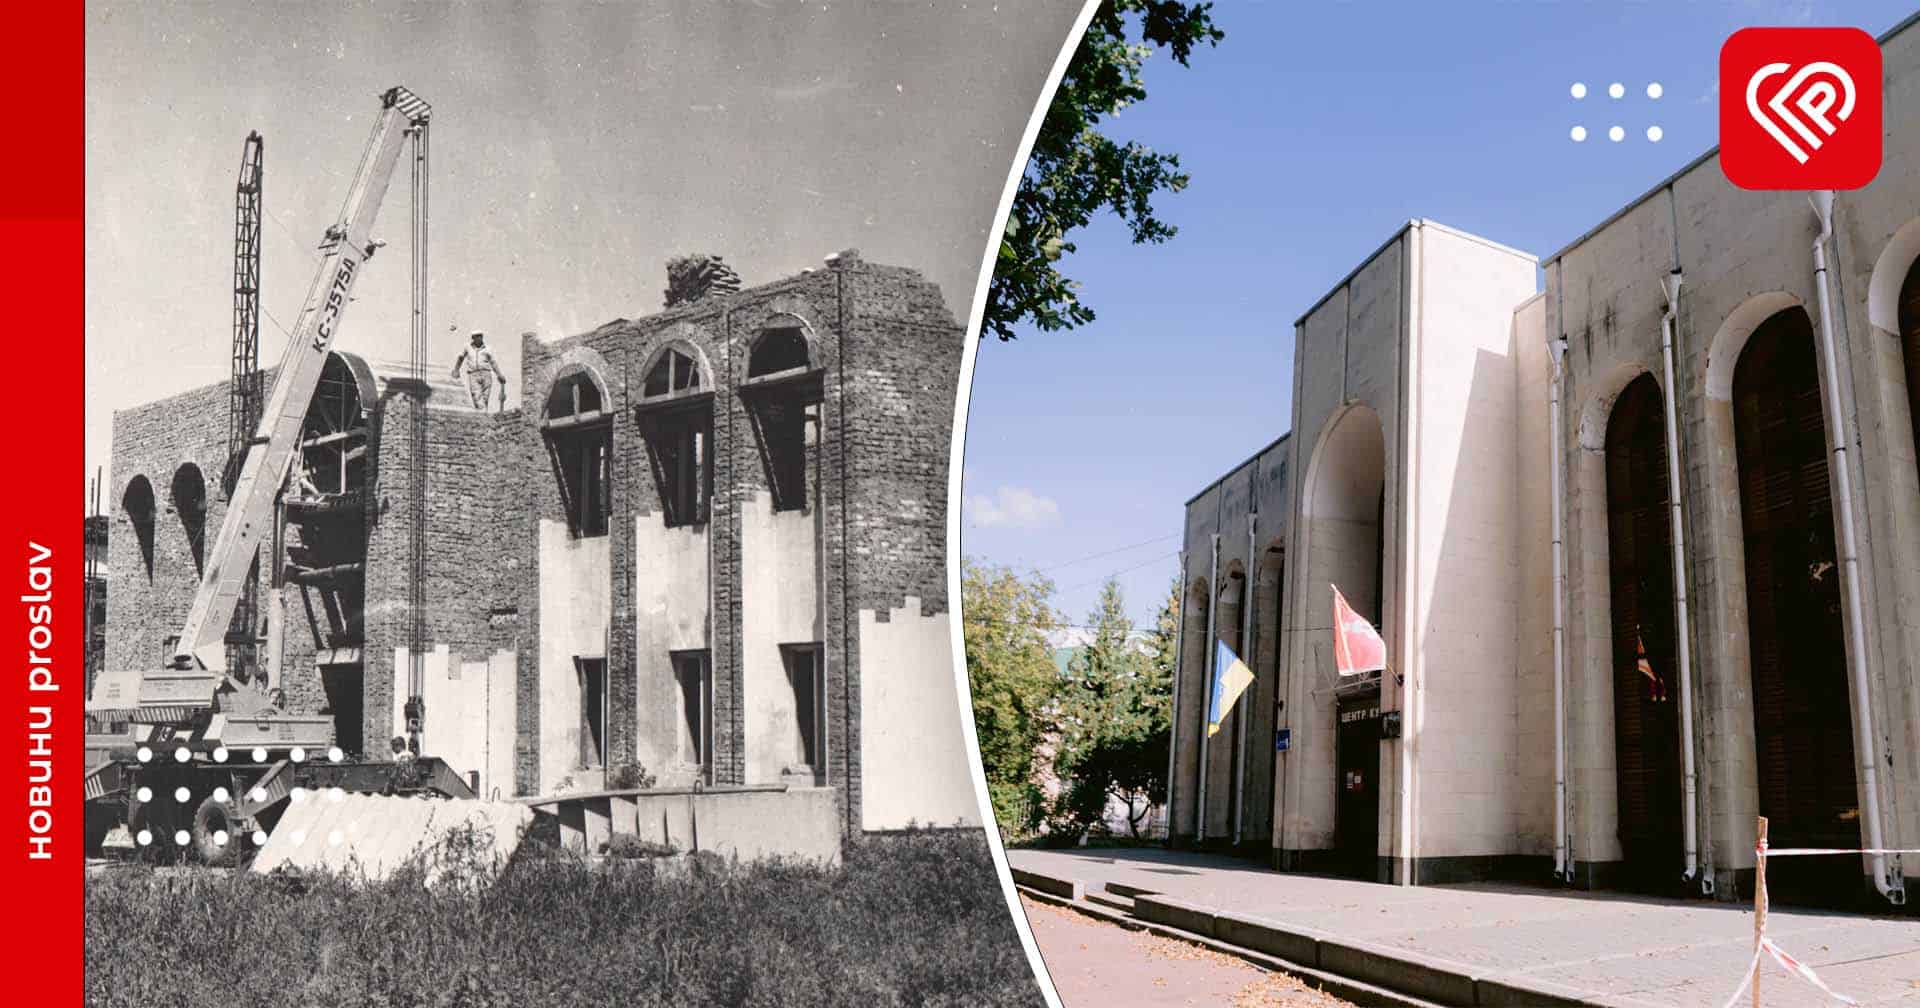 Від «підвальних» дискотек до будівництва молодіжного центру: історія НЦК «Зустріч» у Переяславі